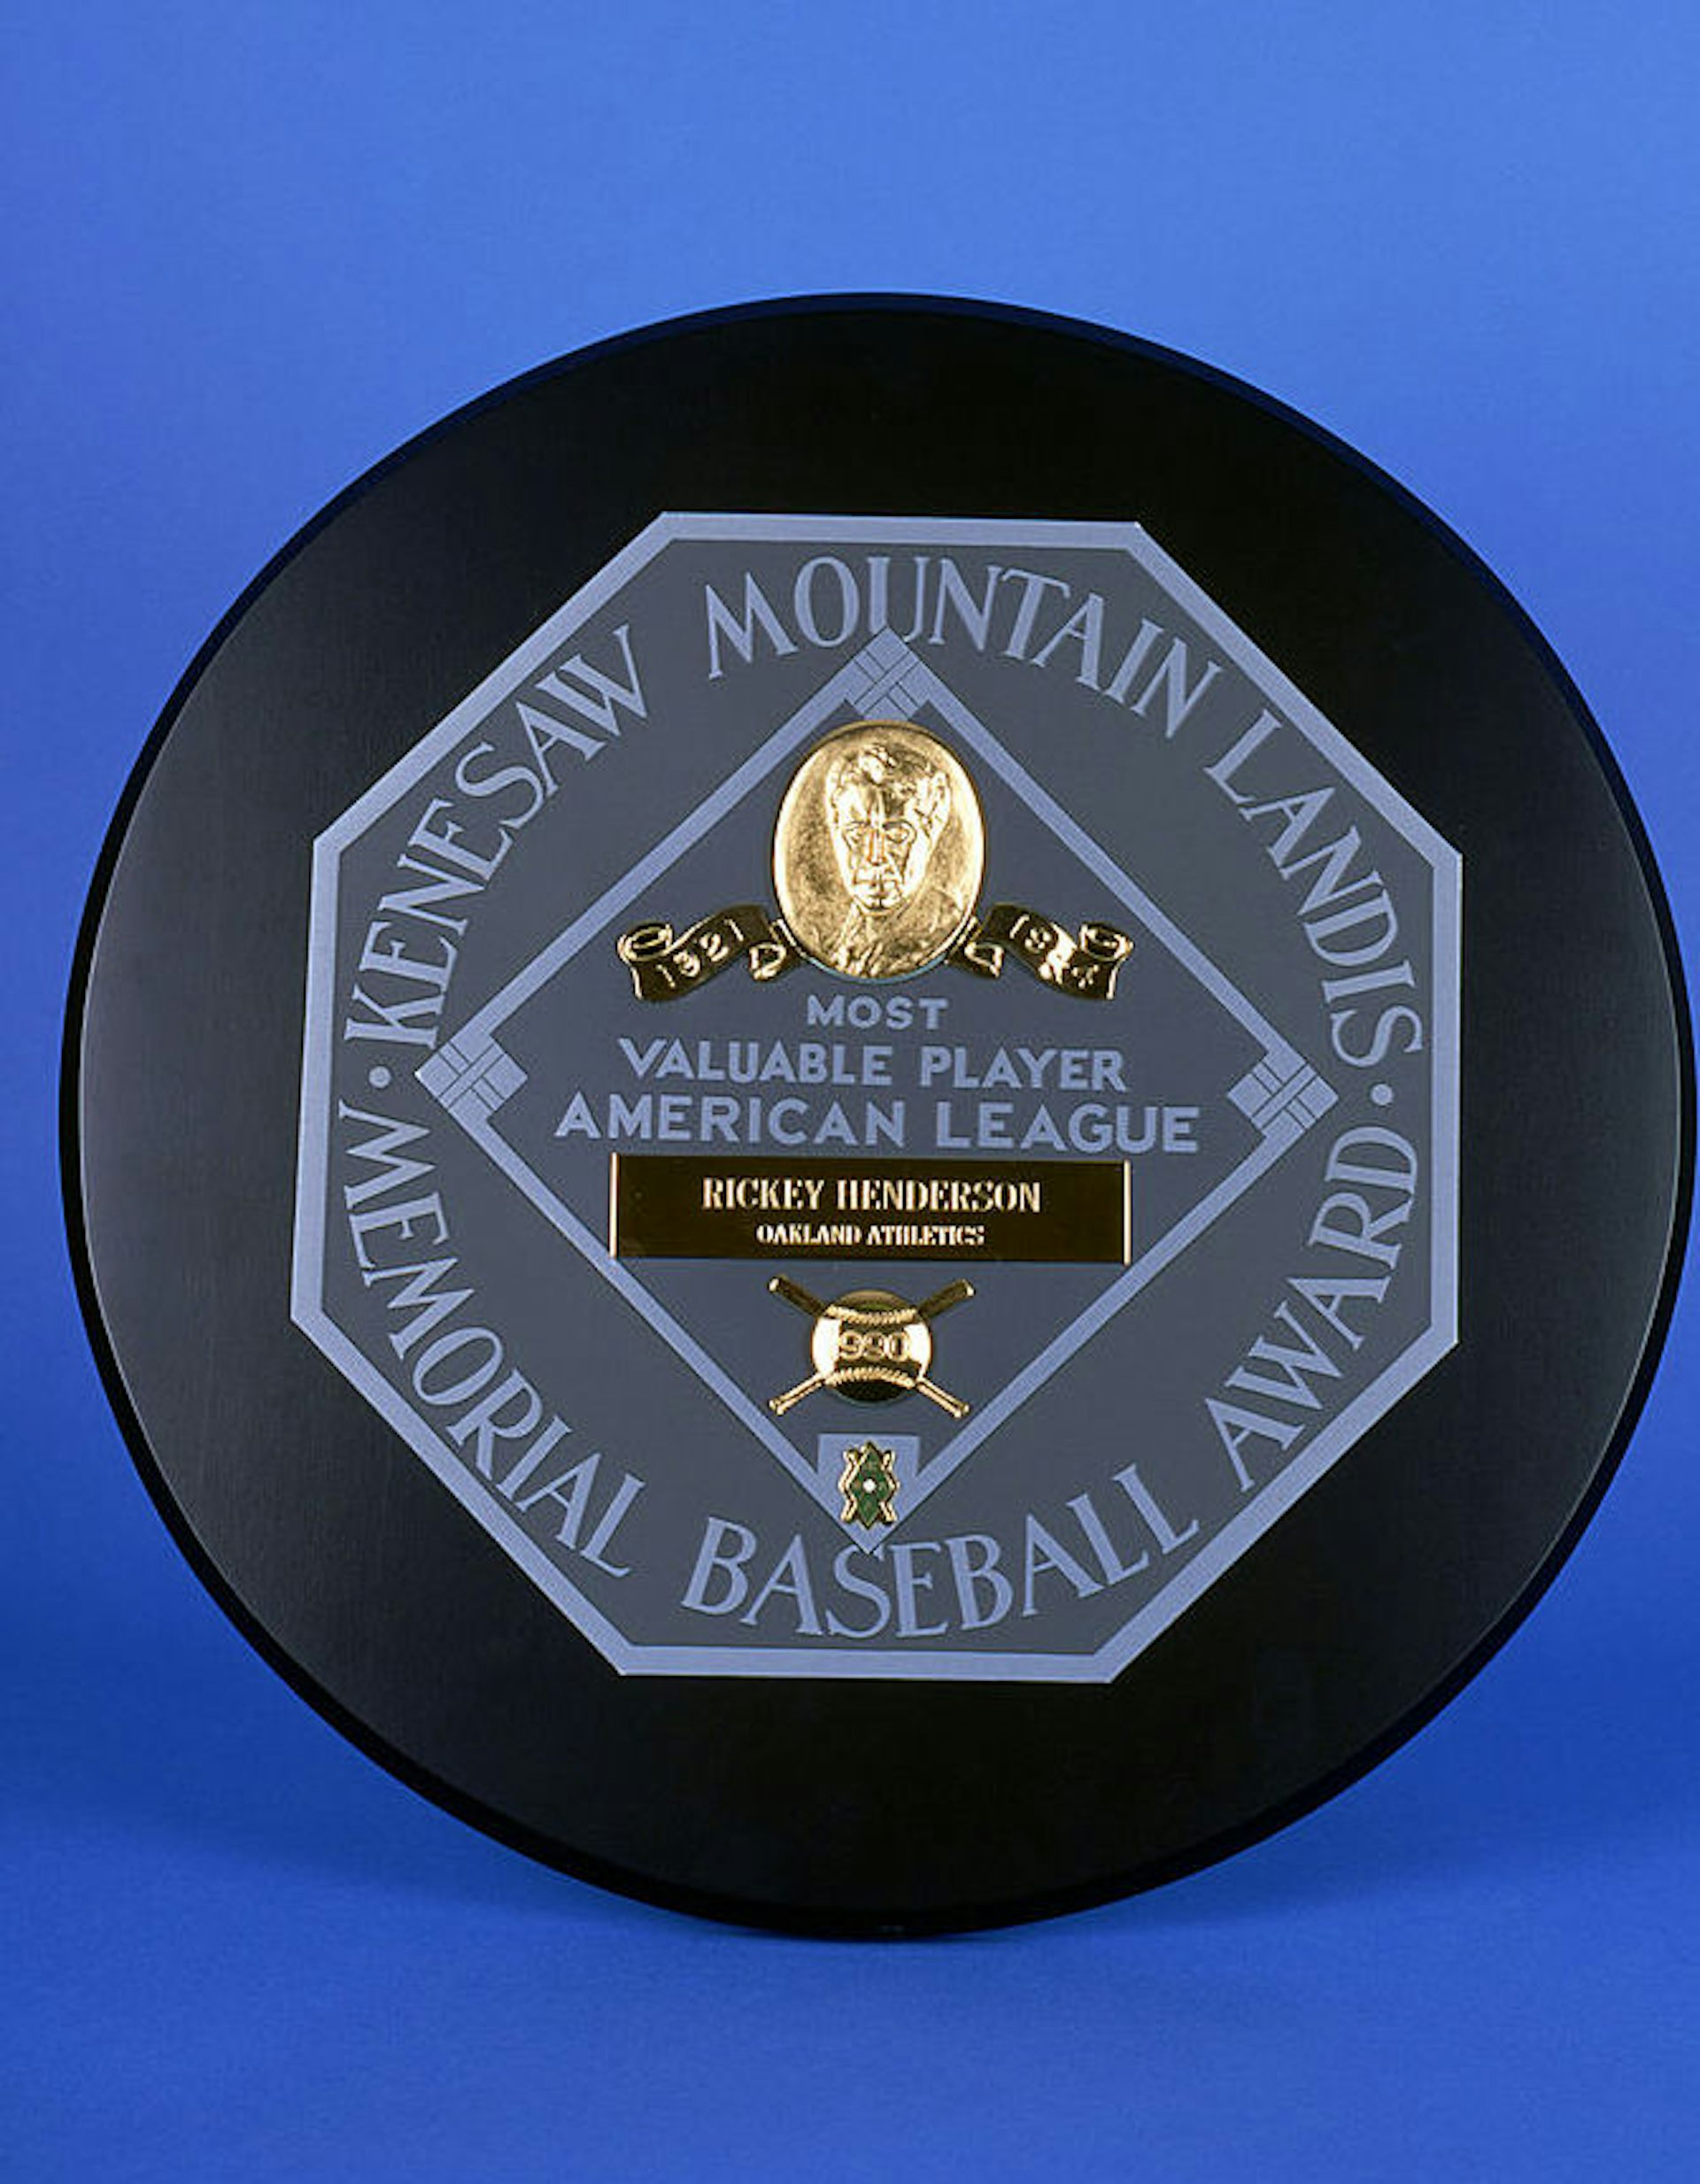  Otorgado al jardinero de los Atléticos de Oakland Rickey Henderson, el Premio al Jugador Más Valioso de la Liga Americana de 1990 destaca el nombre de Kenesaw Mountain Landis.